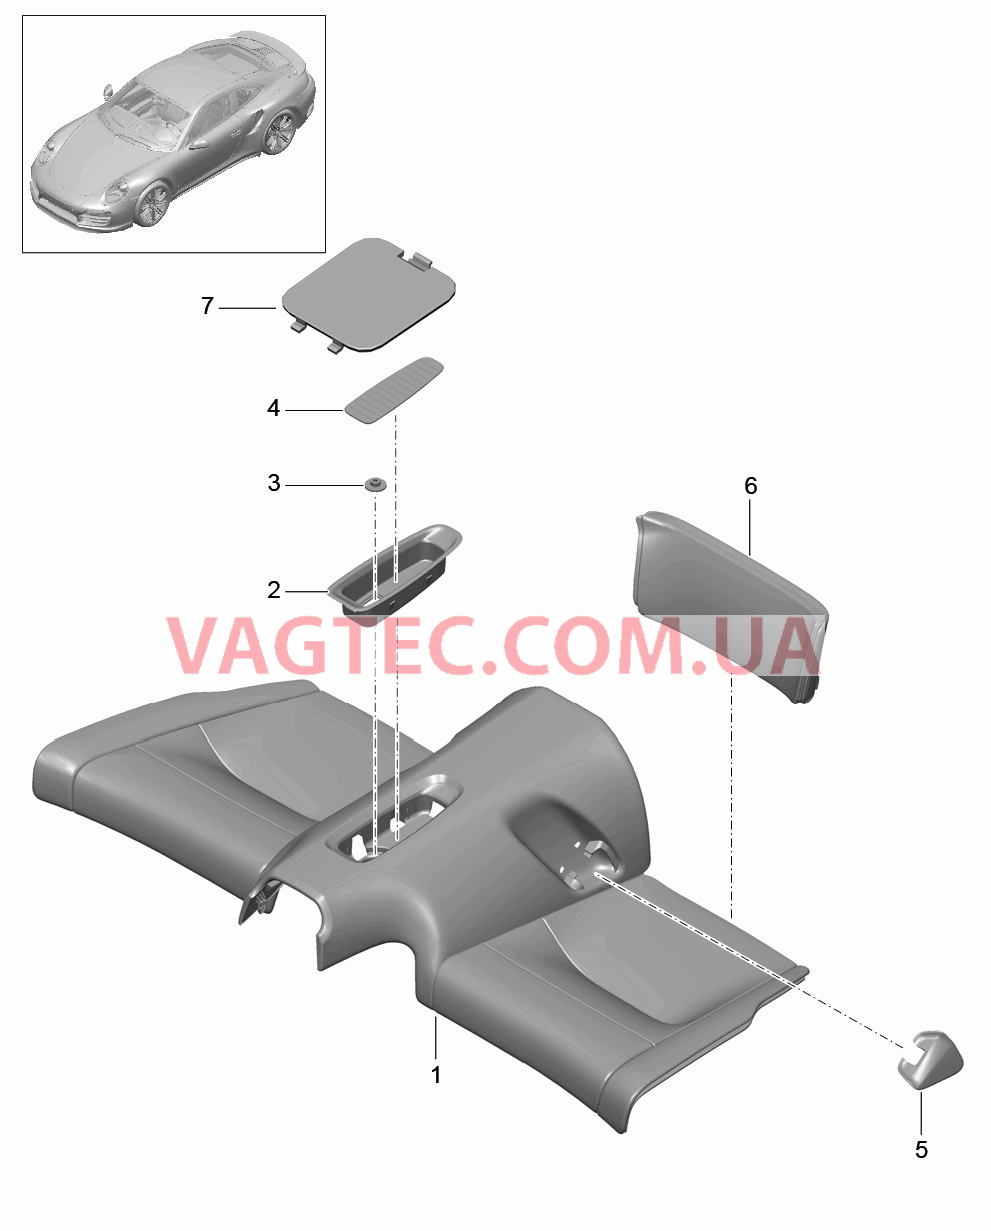 817-050 Подушка заднего сиденья, Крепление
						
						COUPE для PORSCHE Porsche991Turbo 2014-2017USA